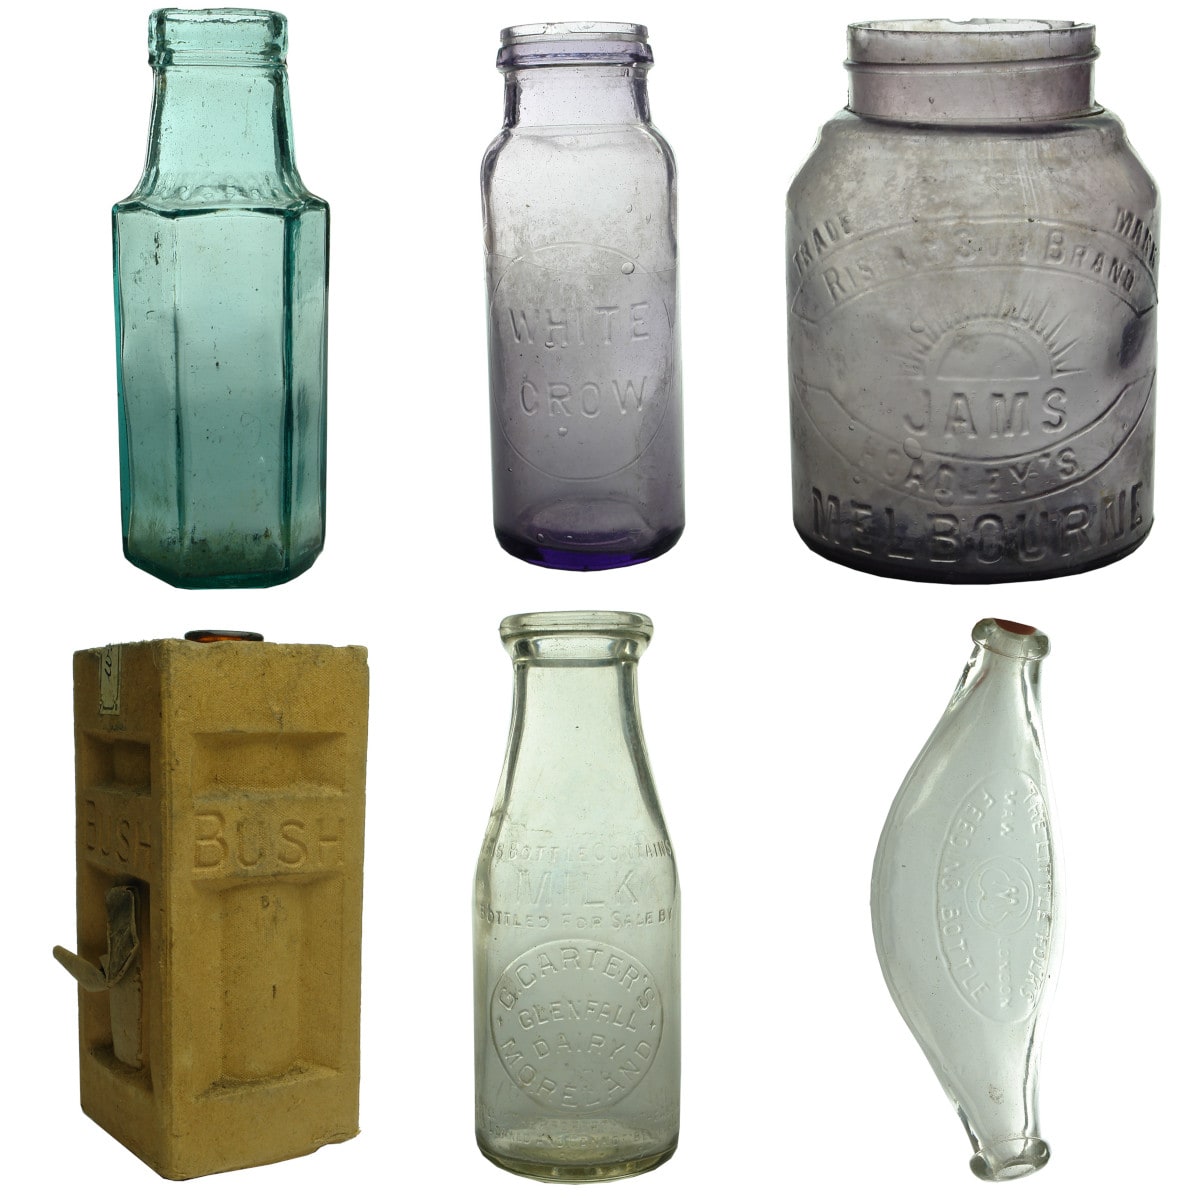 6 Household Bottles: Hexagonal Pickle; White Crow Jam; Hoadley's Jam; Bush Essence; Carter's Moreland milk; Little Folks Feeding Bottle.